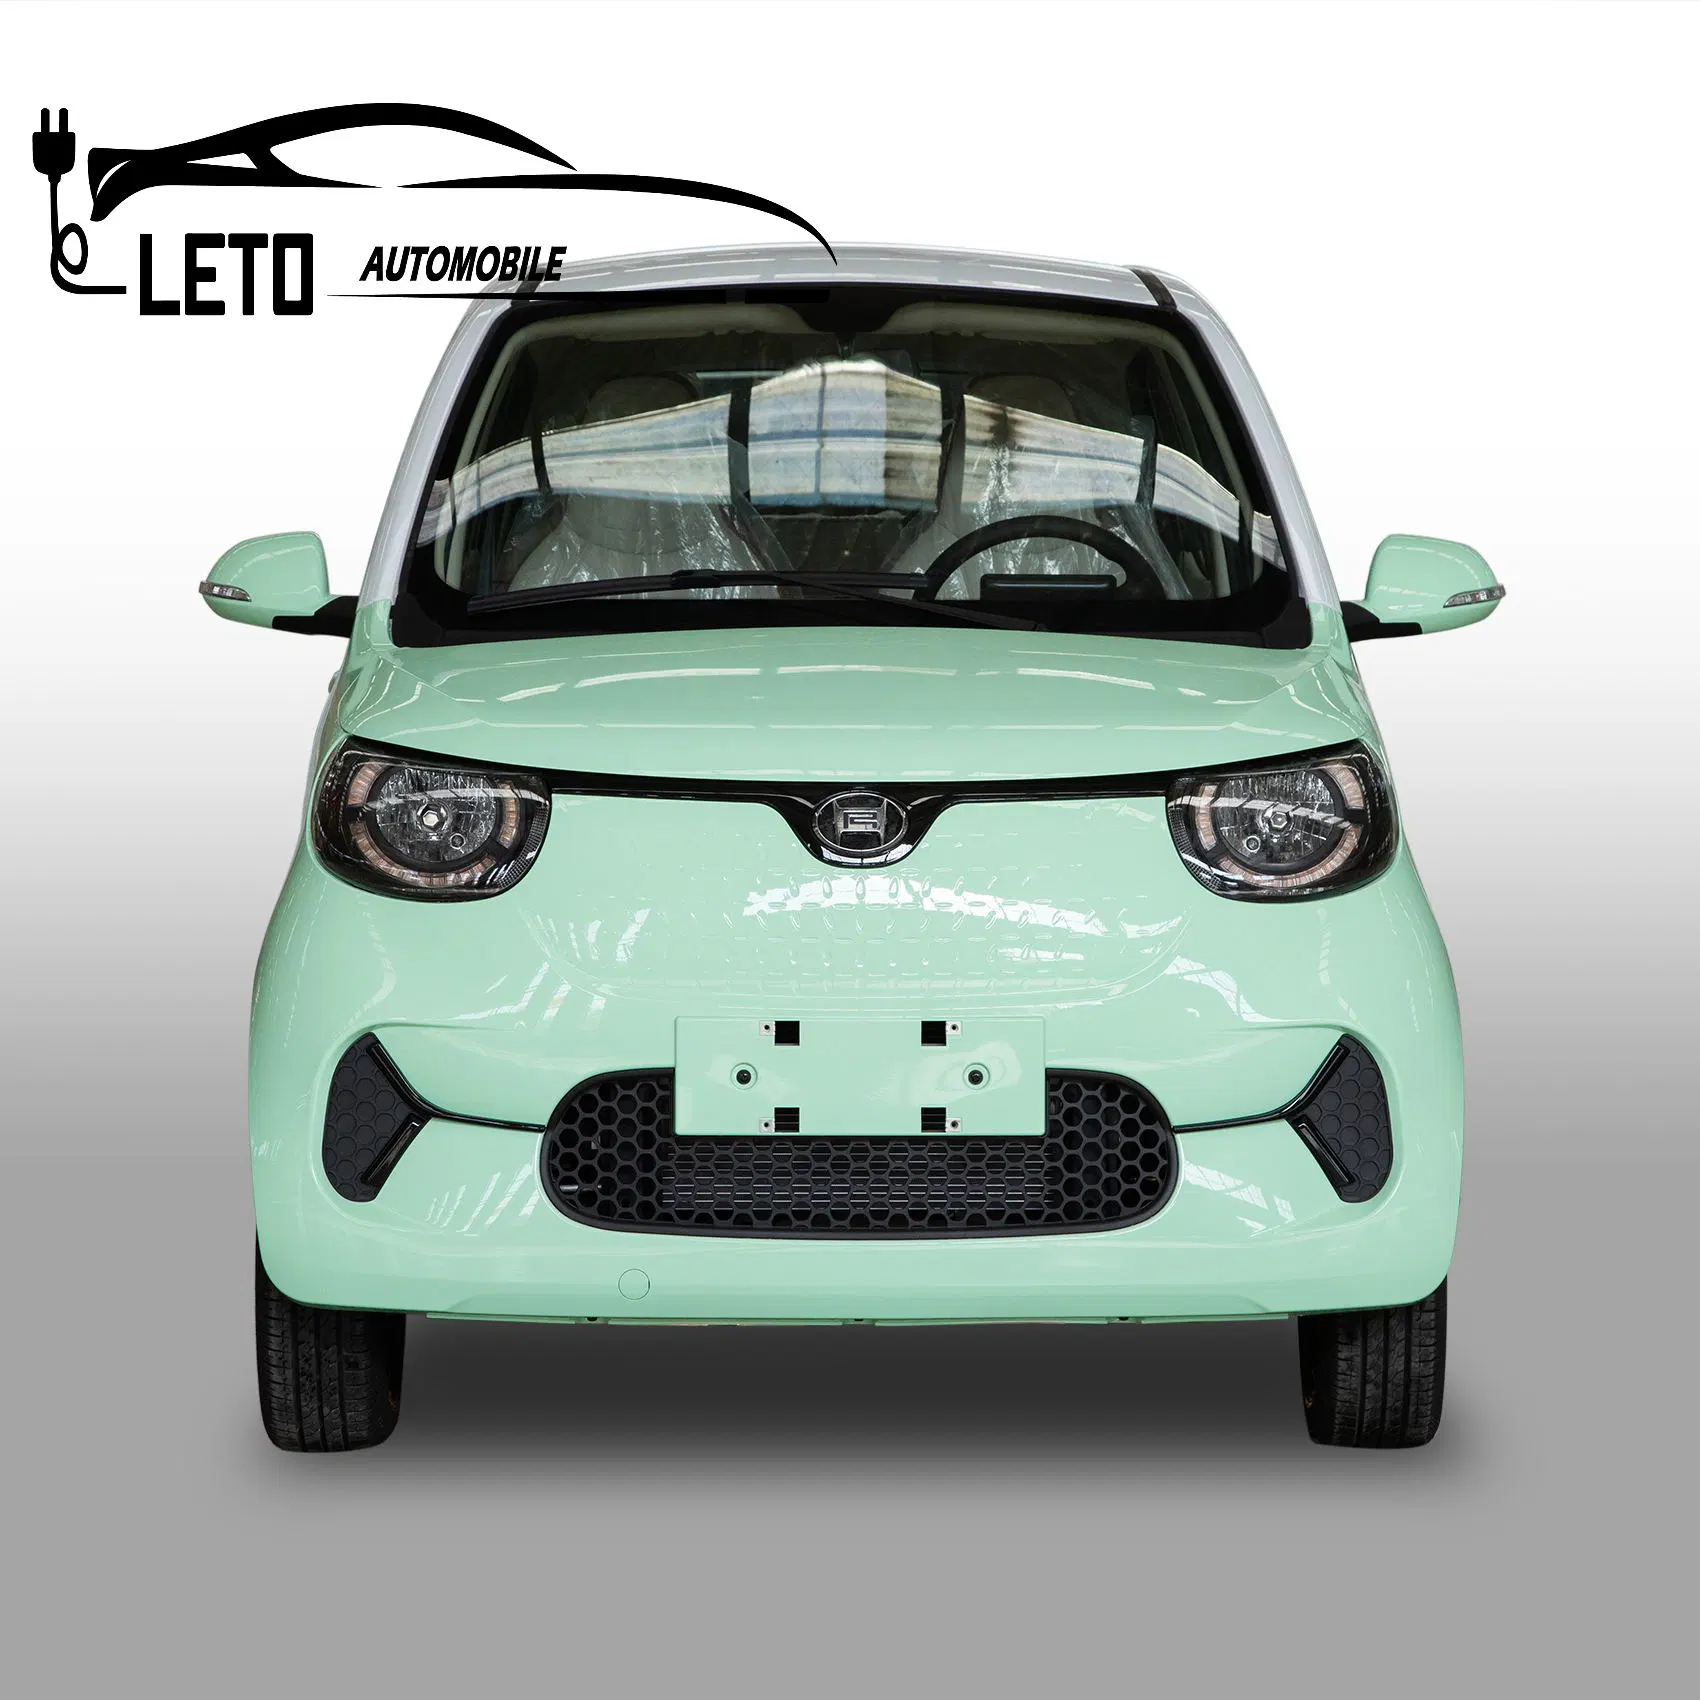 Rhd&amp;IZD Nedc Gama 165km Made in China Minicar Mini eléctrico puro EV el vehículo alquiler de 4 asientos